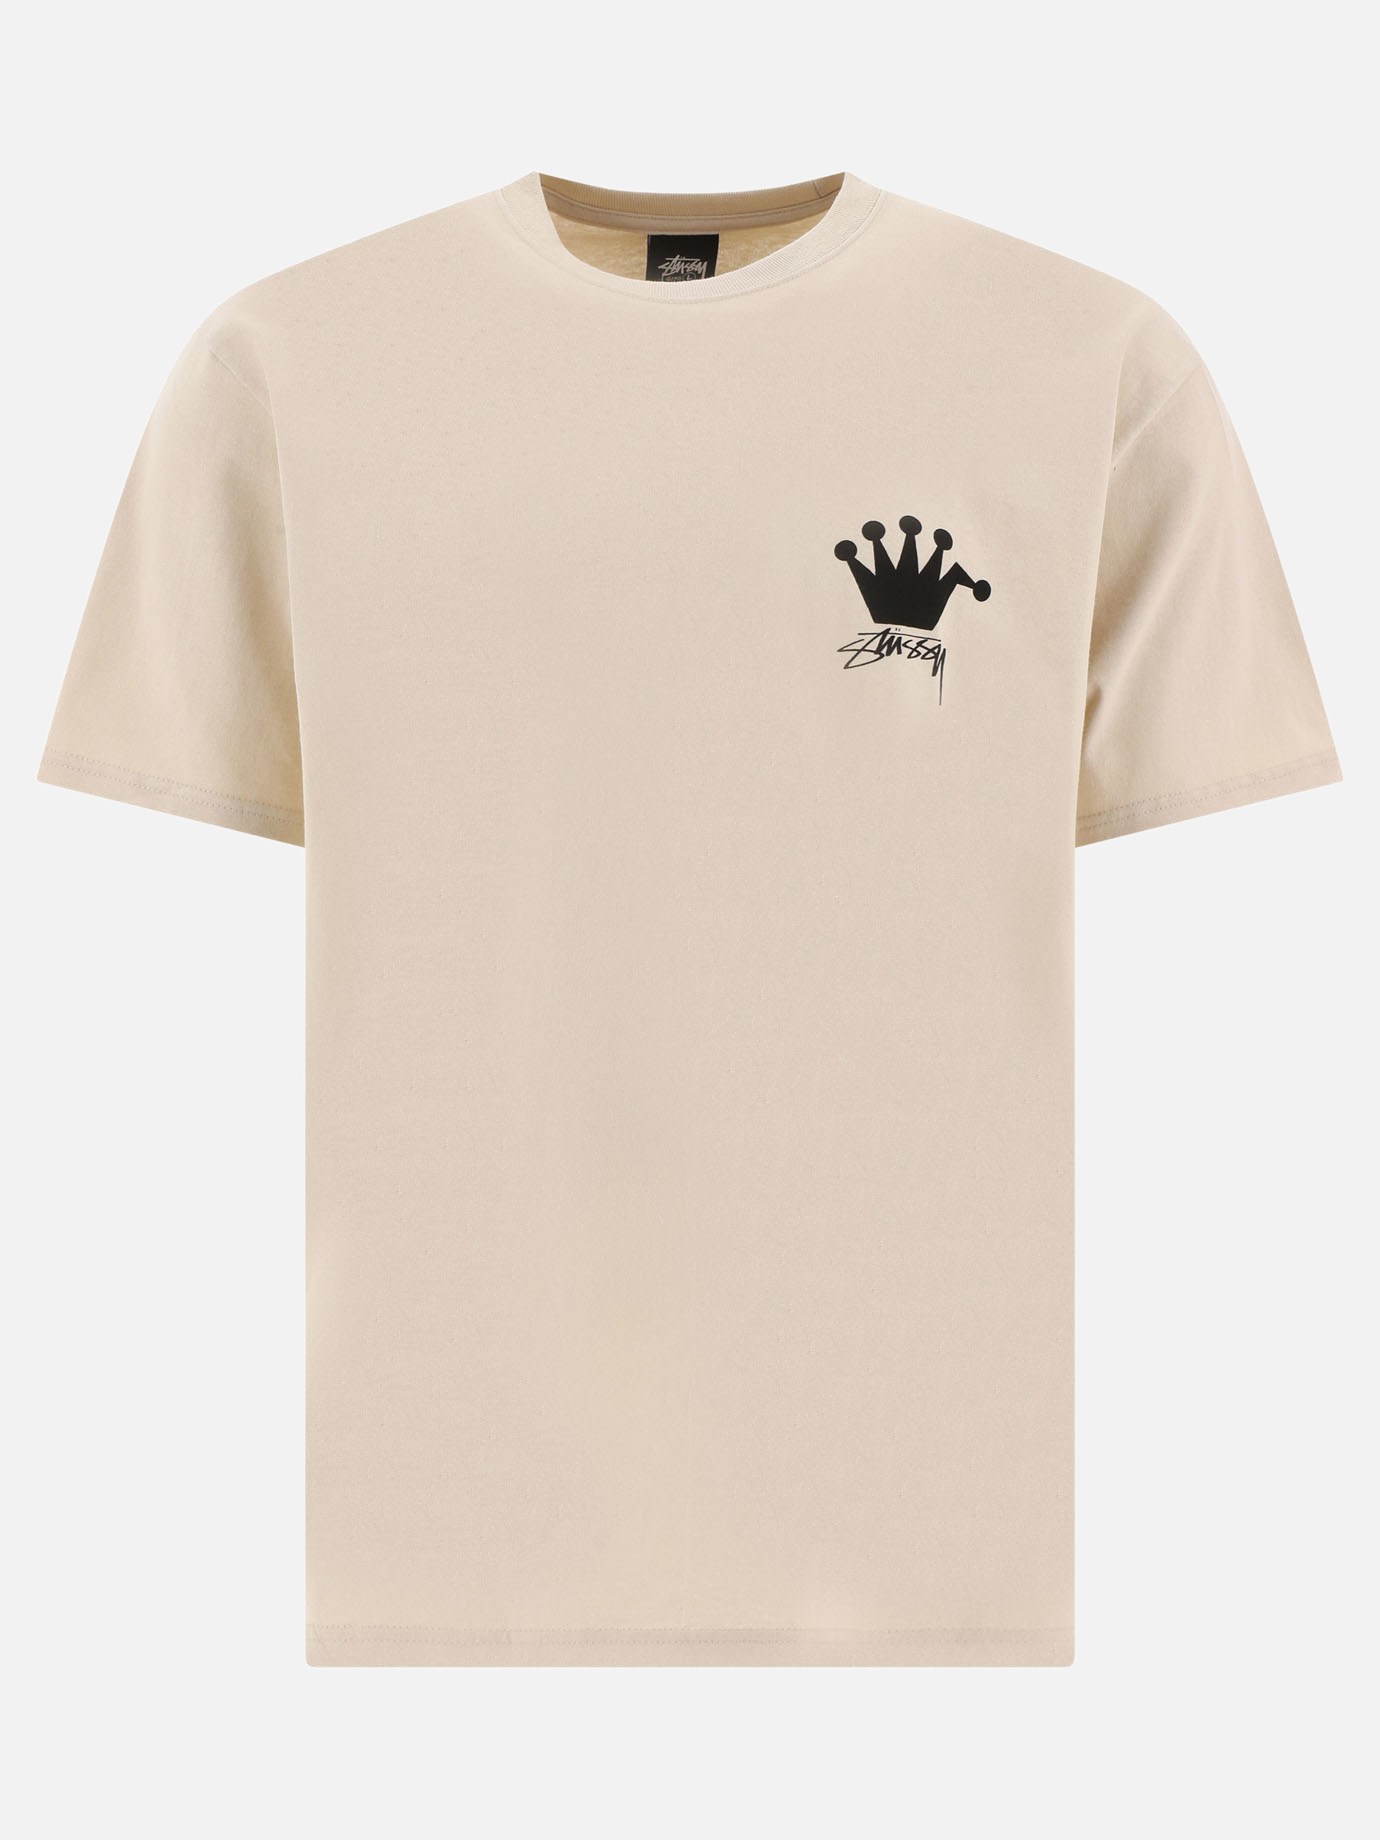  LB Crown  t-shirtby Stüssy - 1